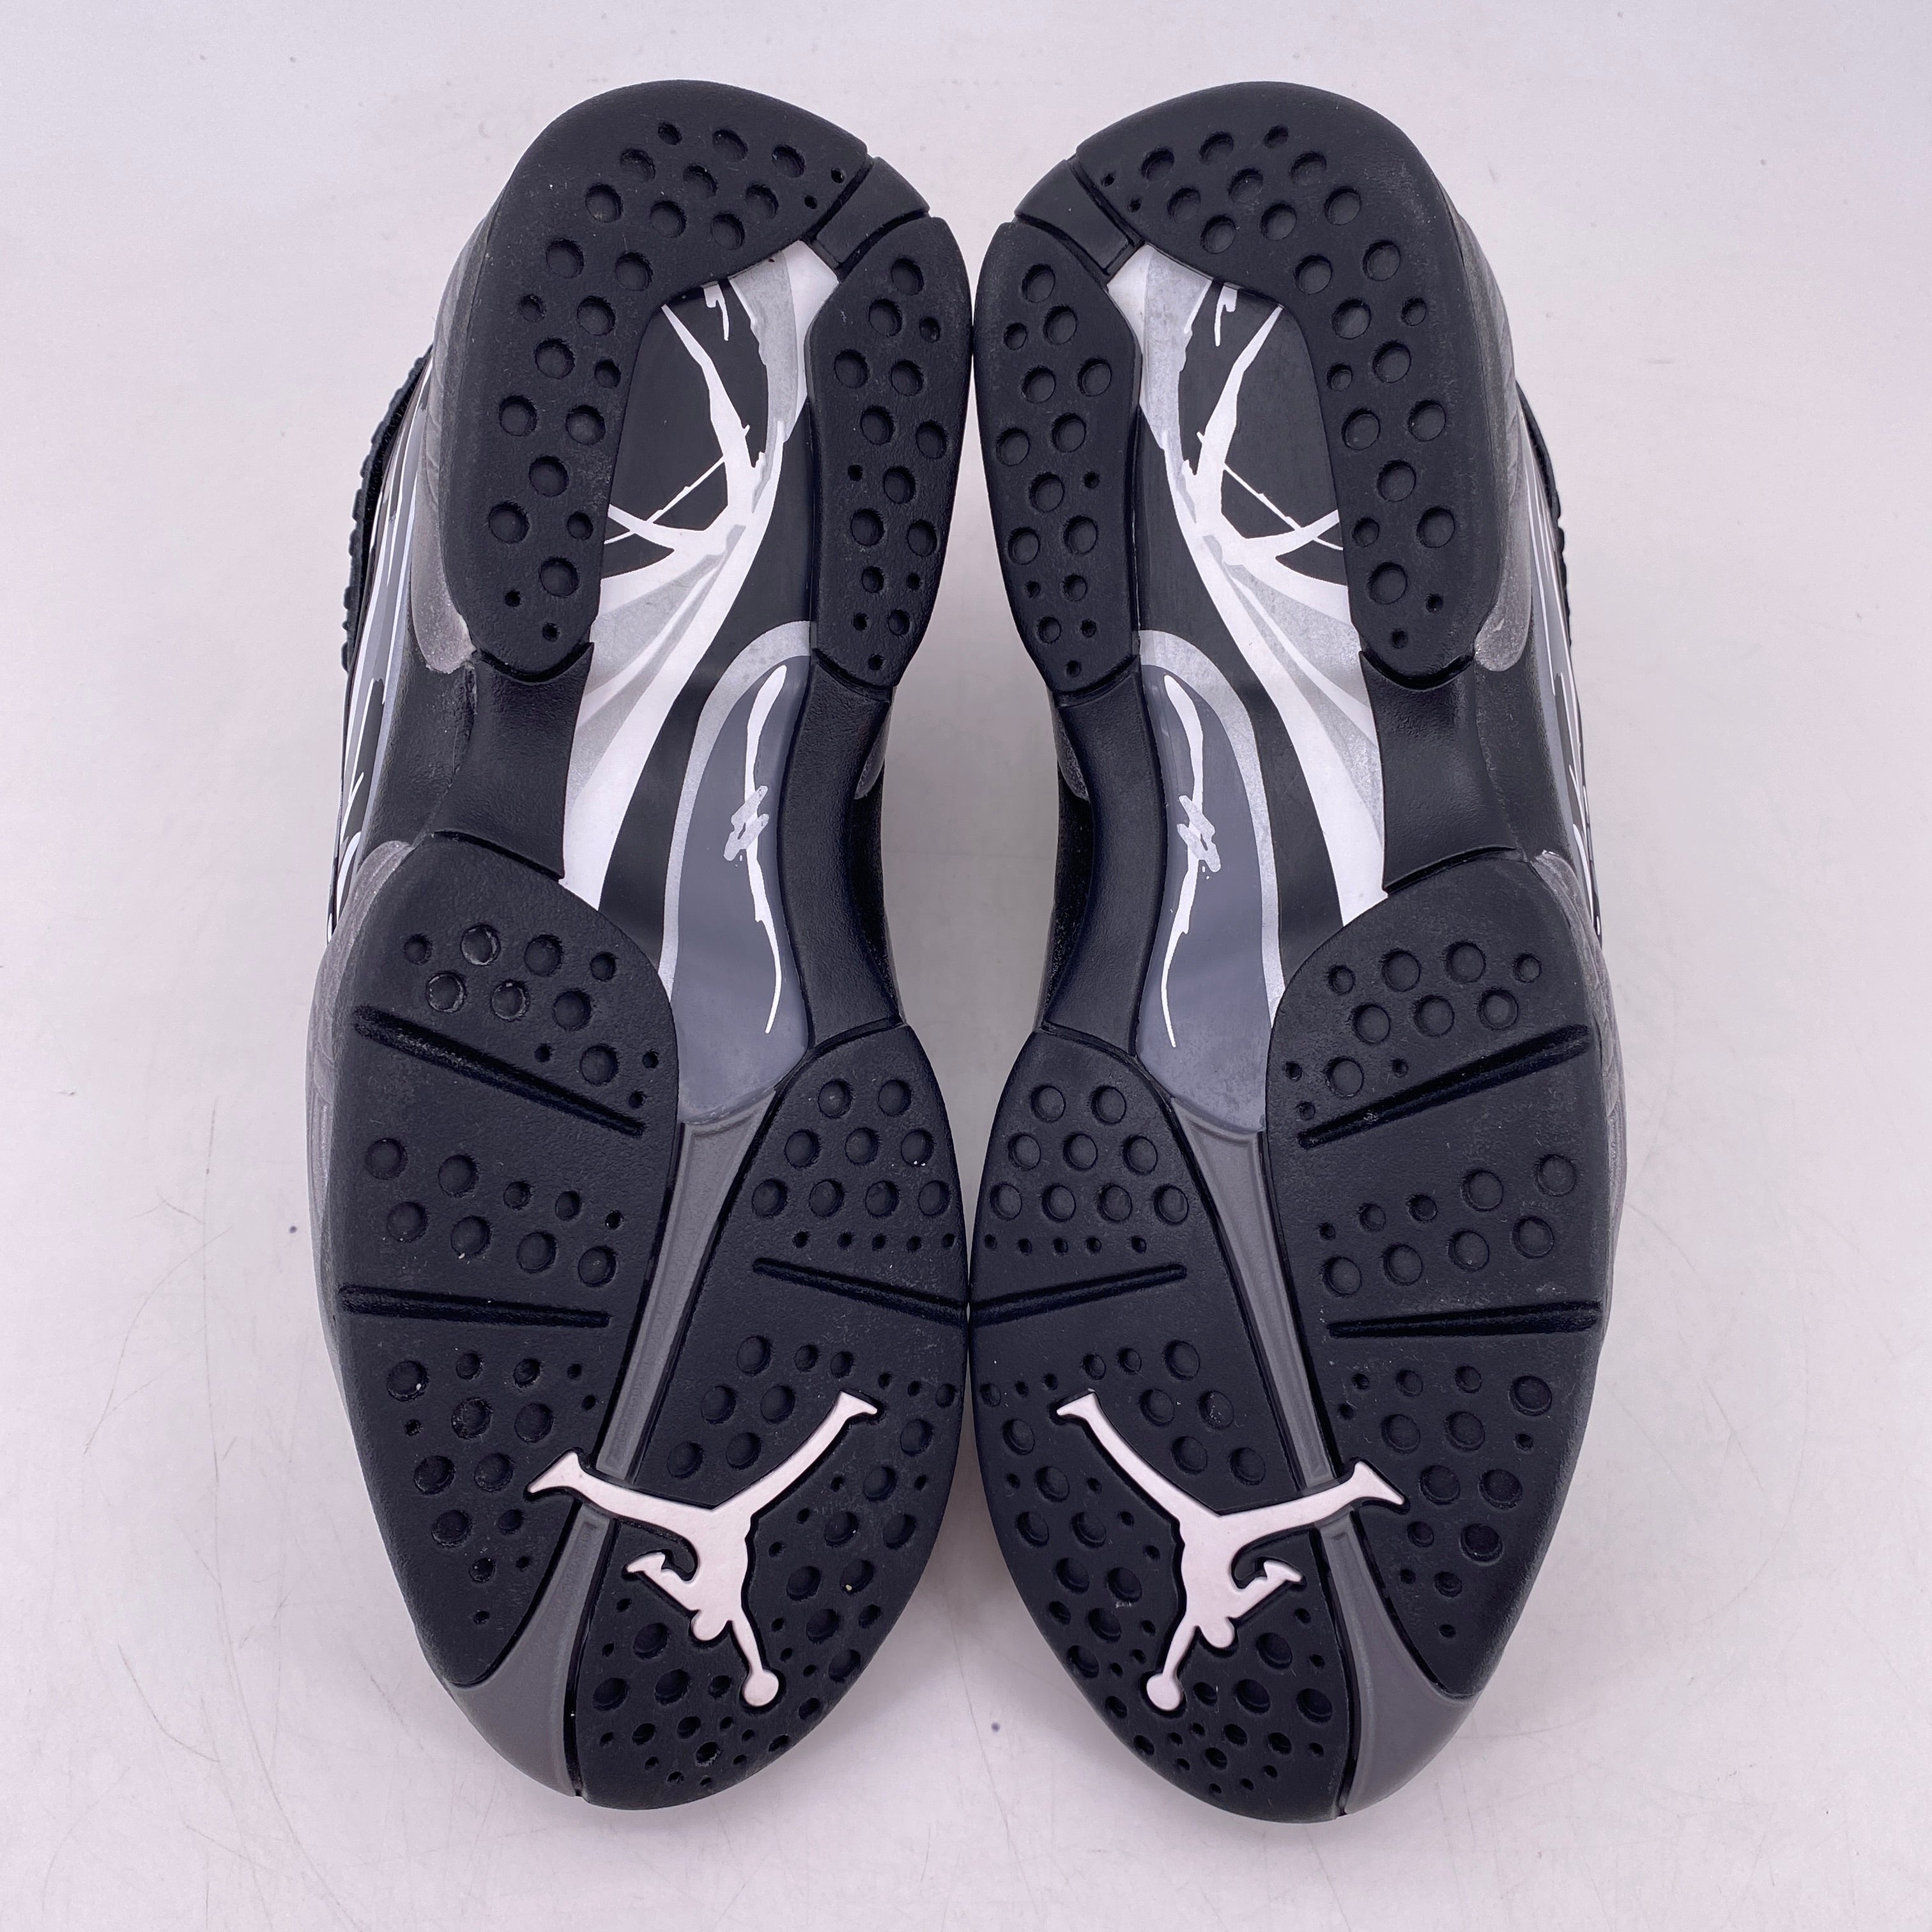 Air Jordan 8 Retro &quot;Chrome&quot; 2015 Used Size 8